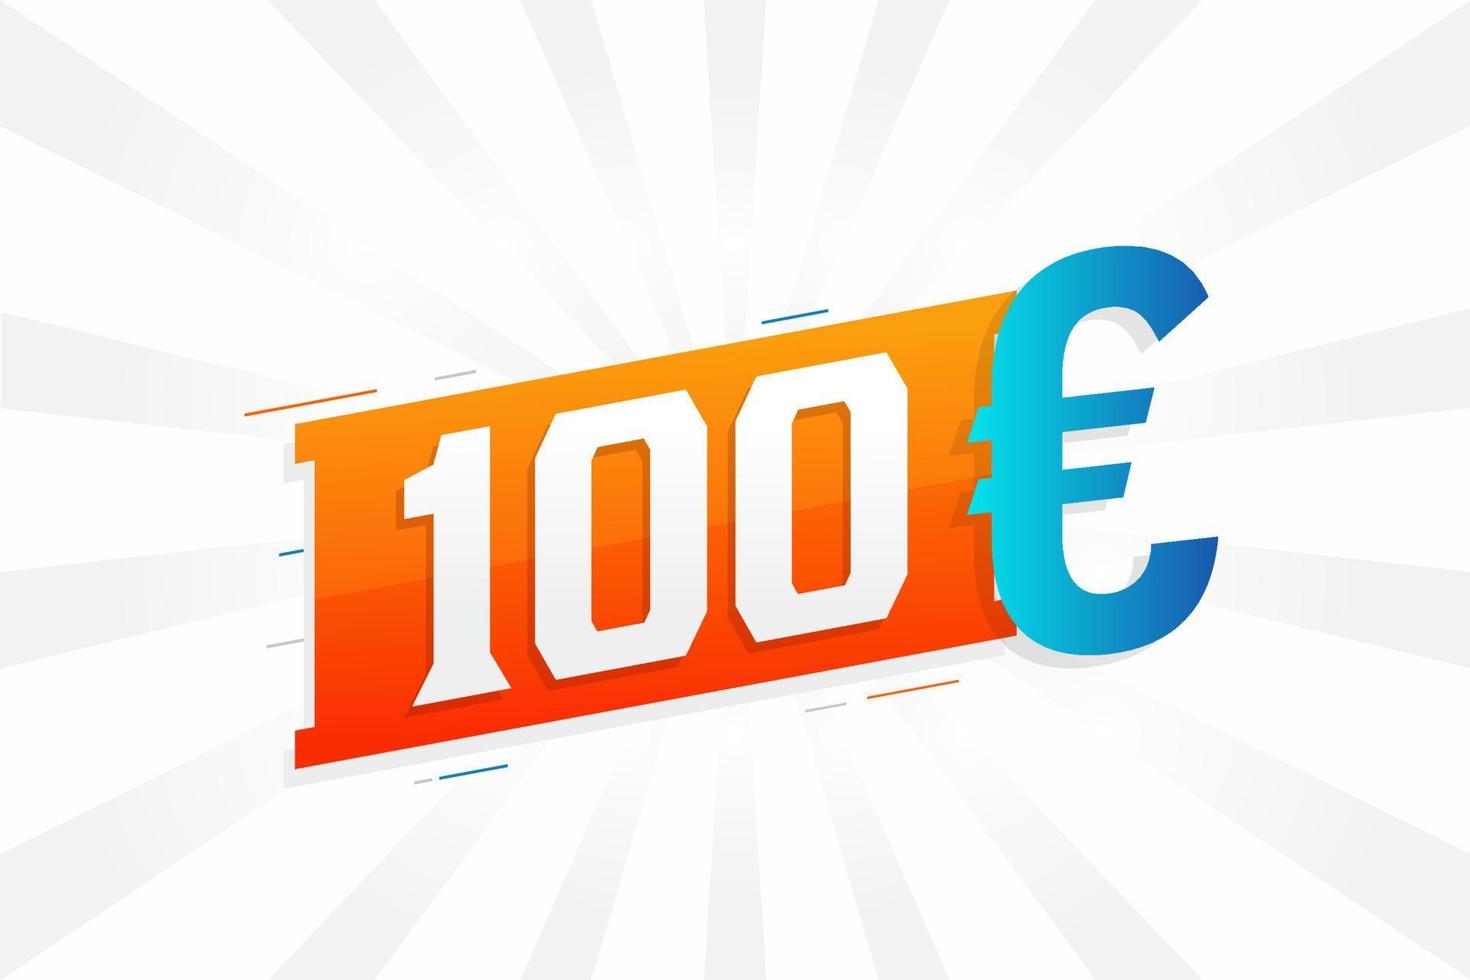 Symbole de texte vectoriel de devise de 100 euros. 100 euros vecteur de stock d'argent de l'union européenne